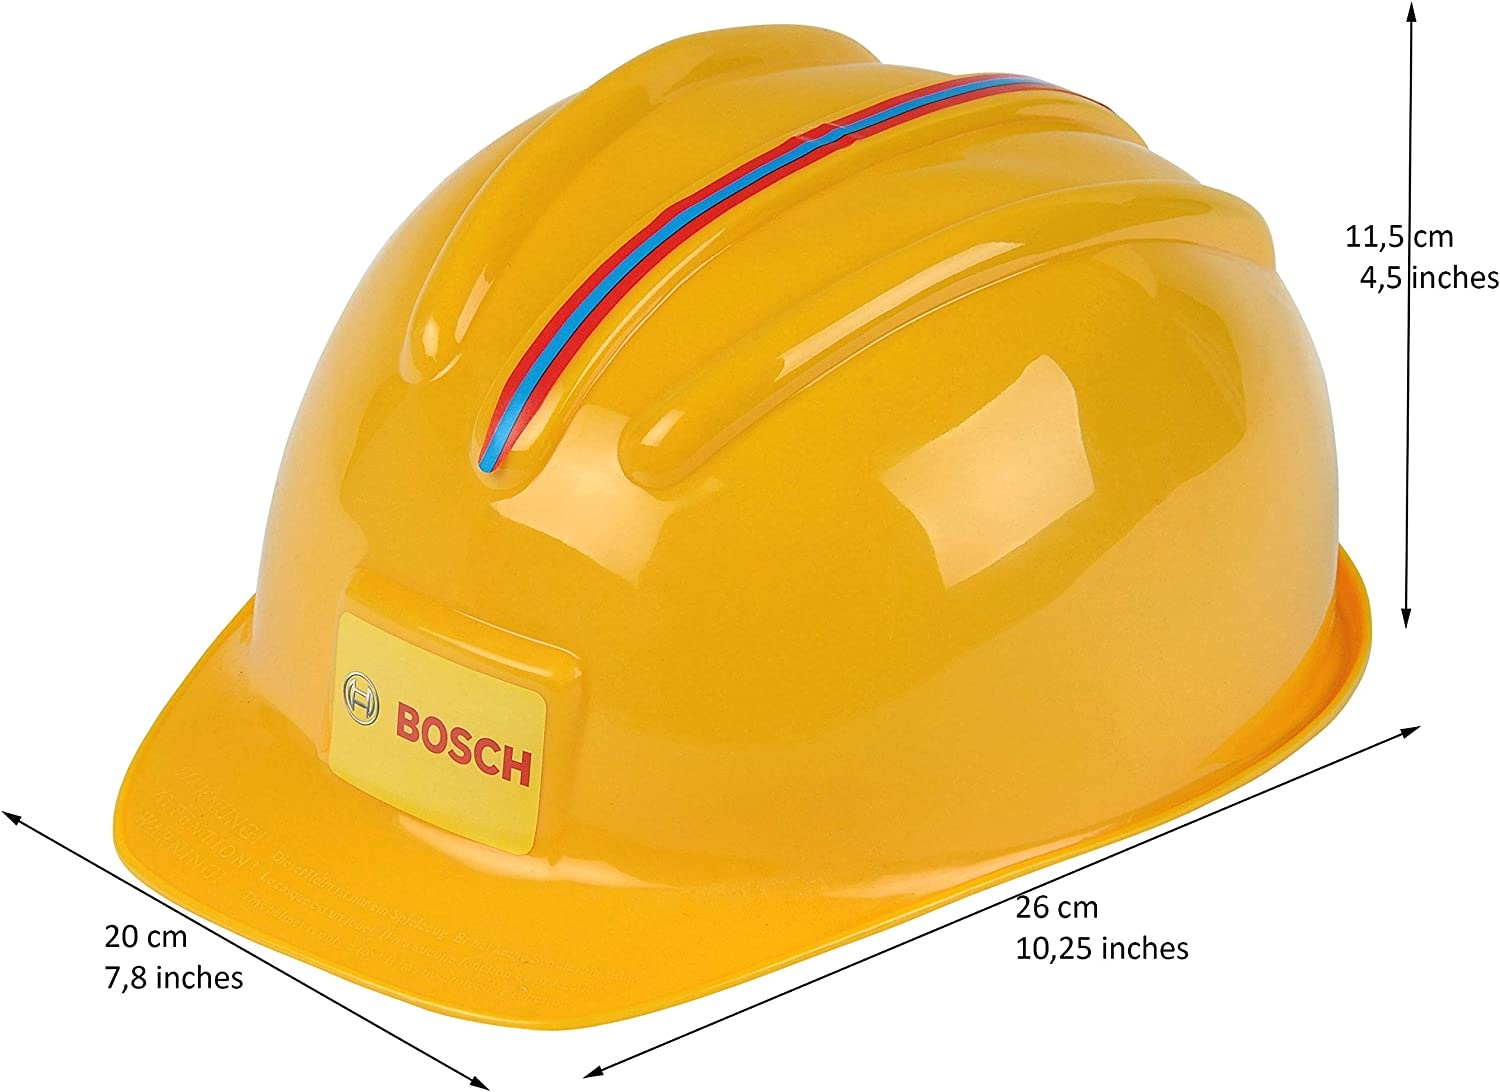 Κράνος εργασίας Bosch 